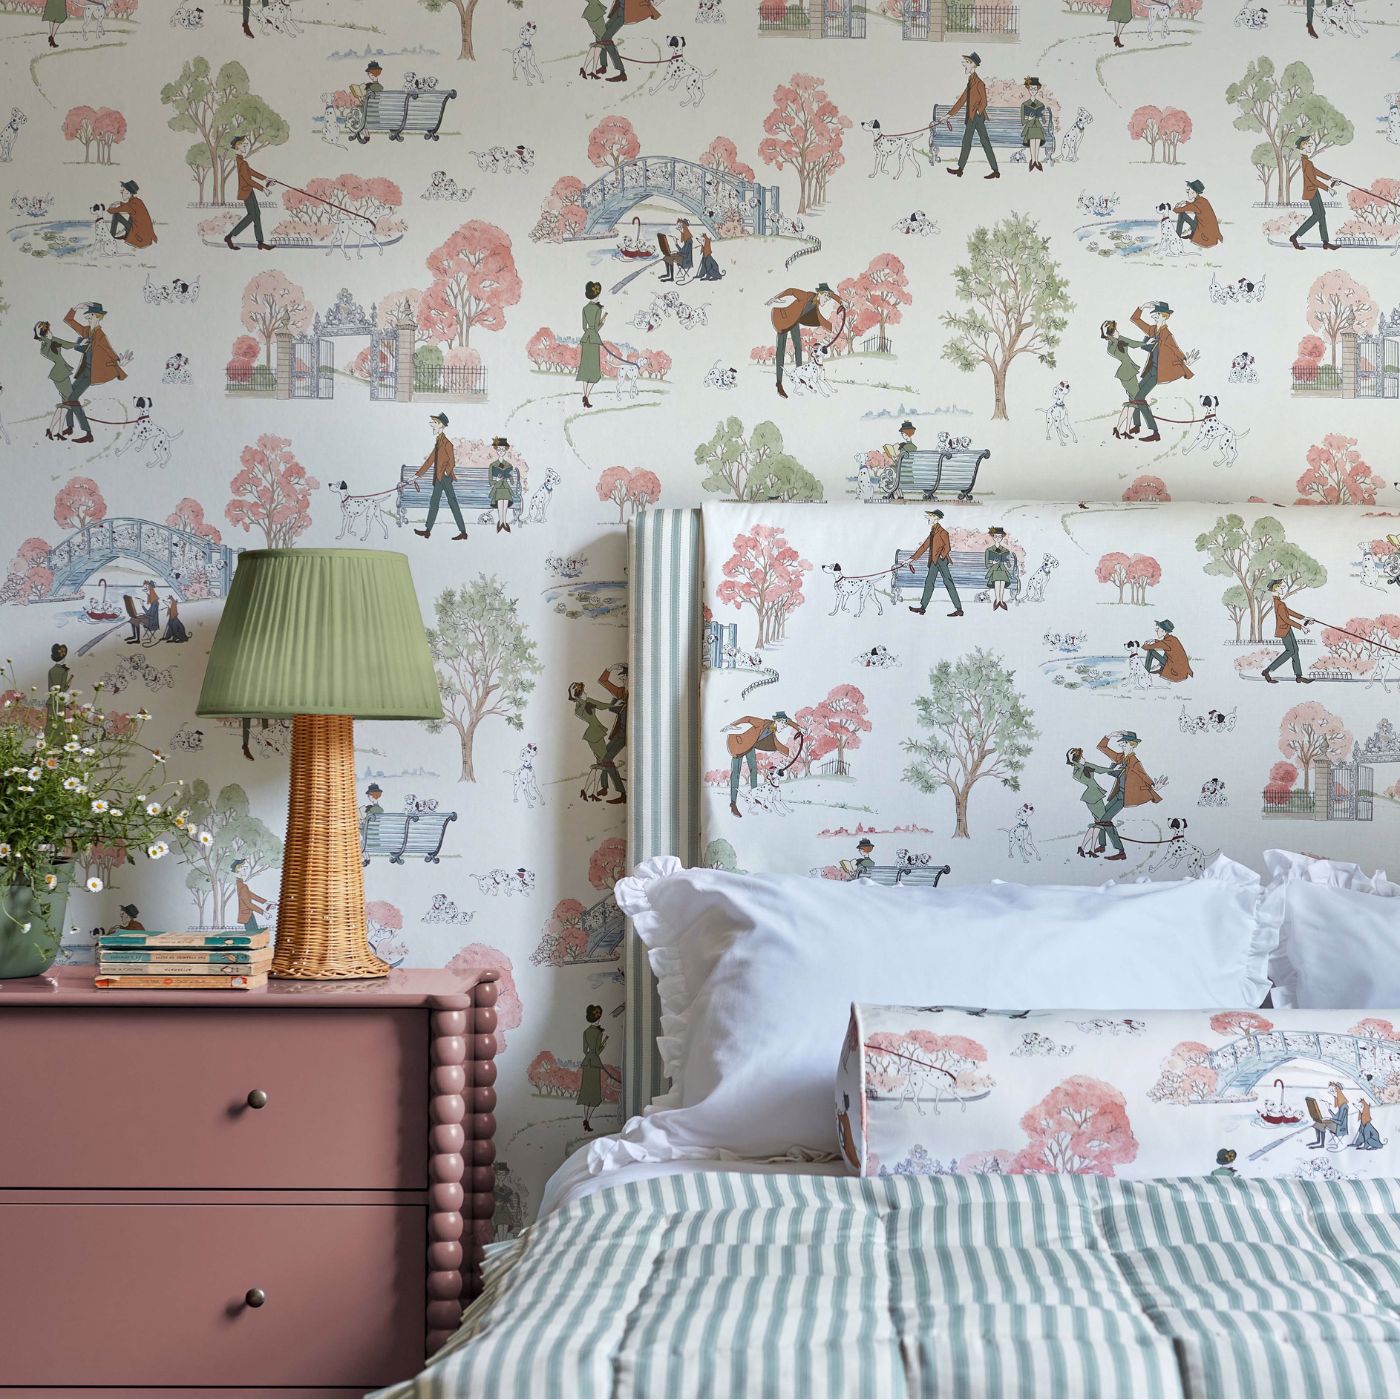 101 Dalmatians Candy Floss Room Wallpaper